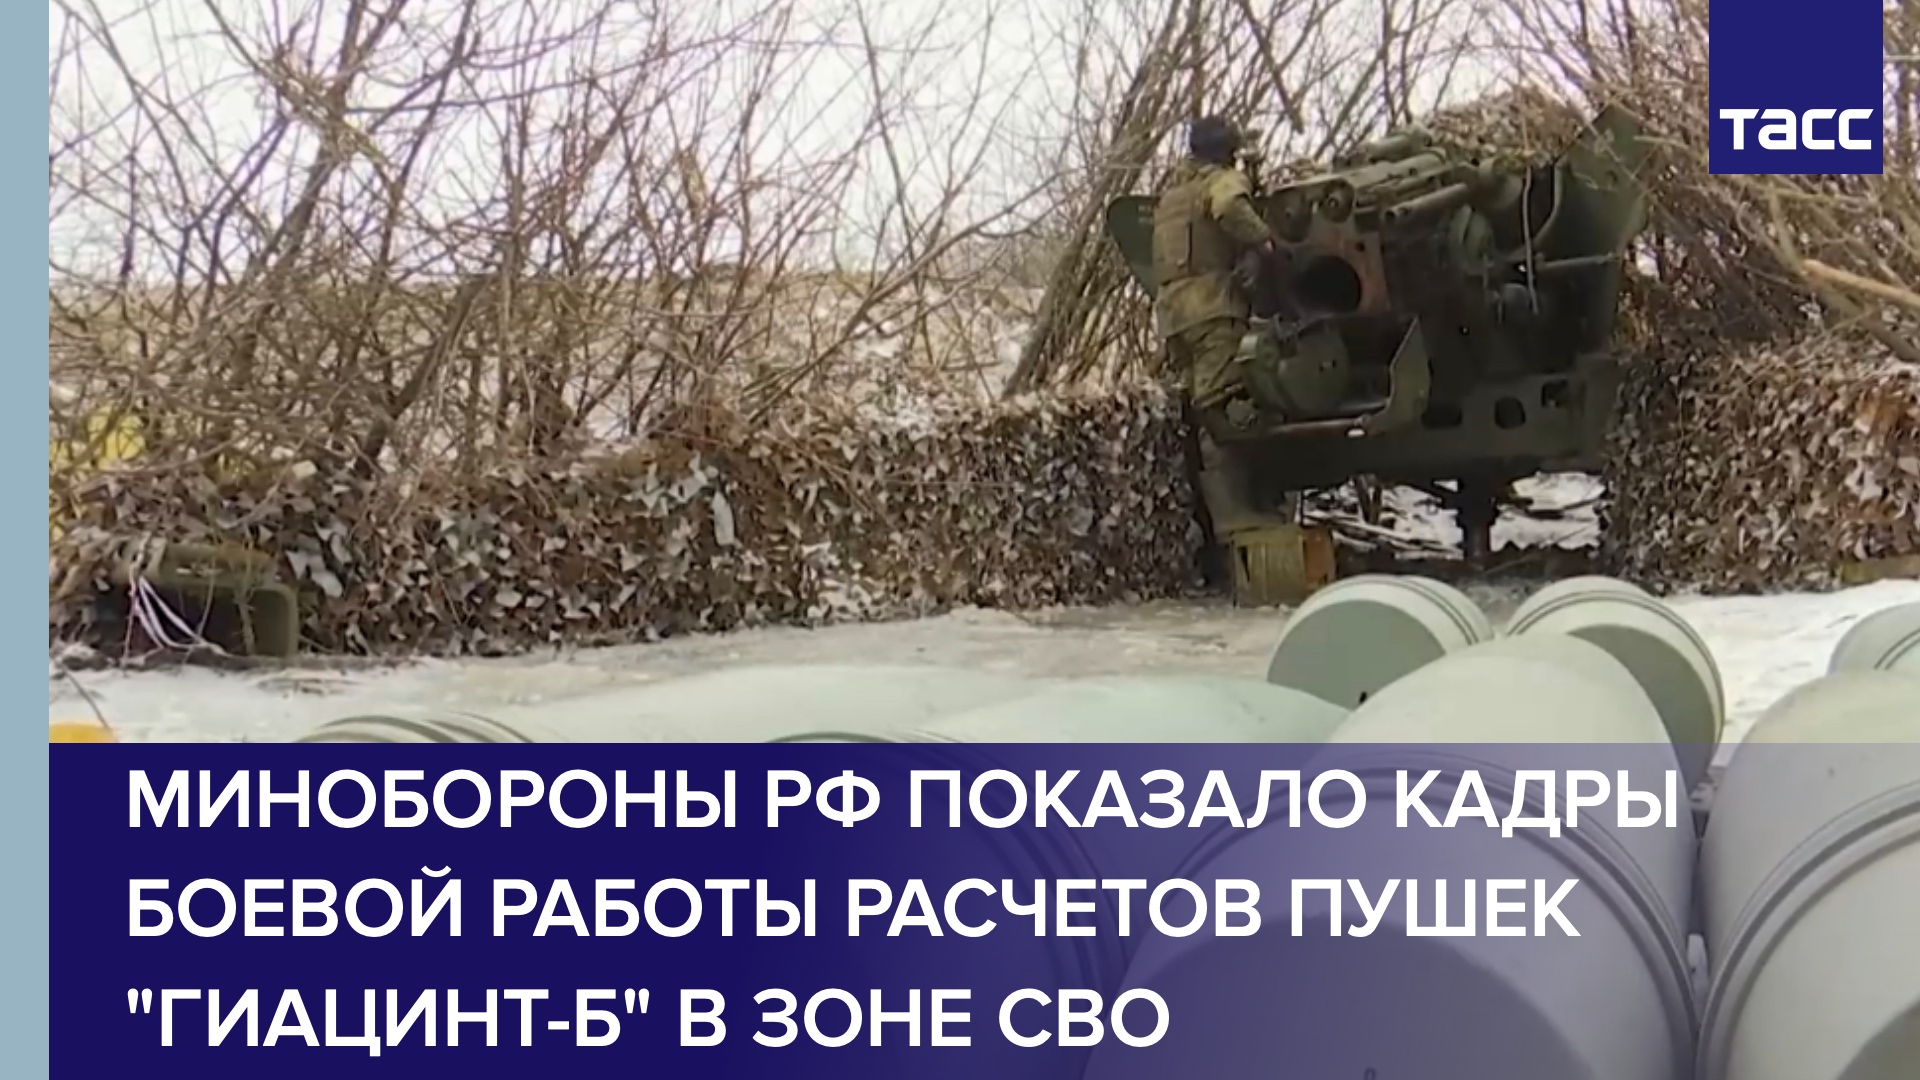 Минобороны РФ показало кадры боевой работы расчетов пушек "Гиацинт-Б" в зоне СВО